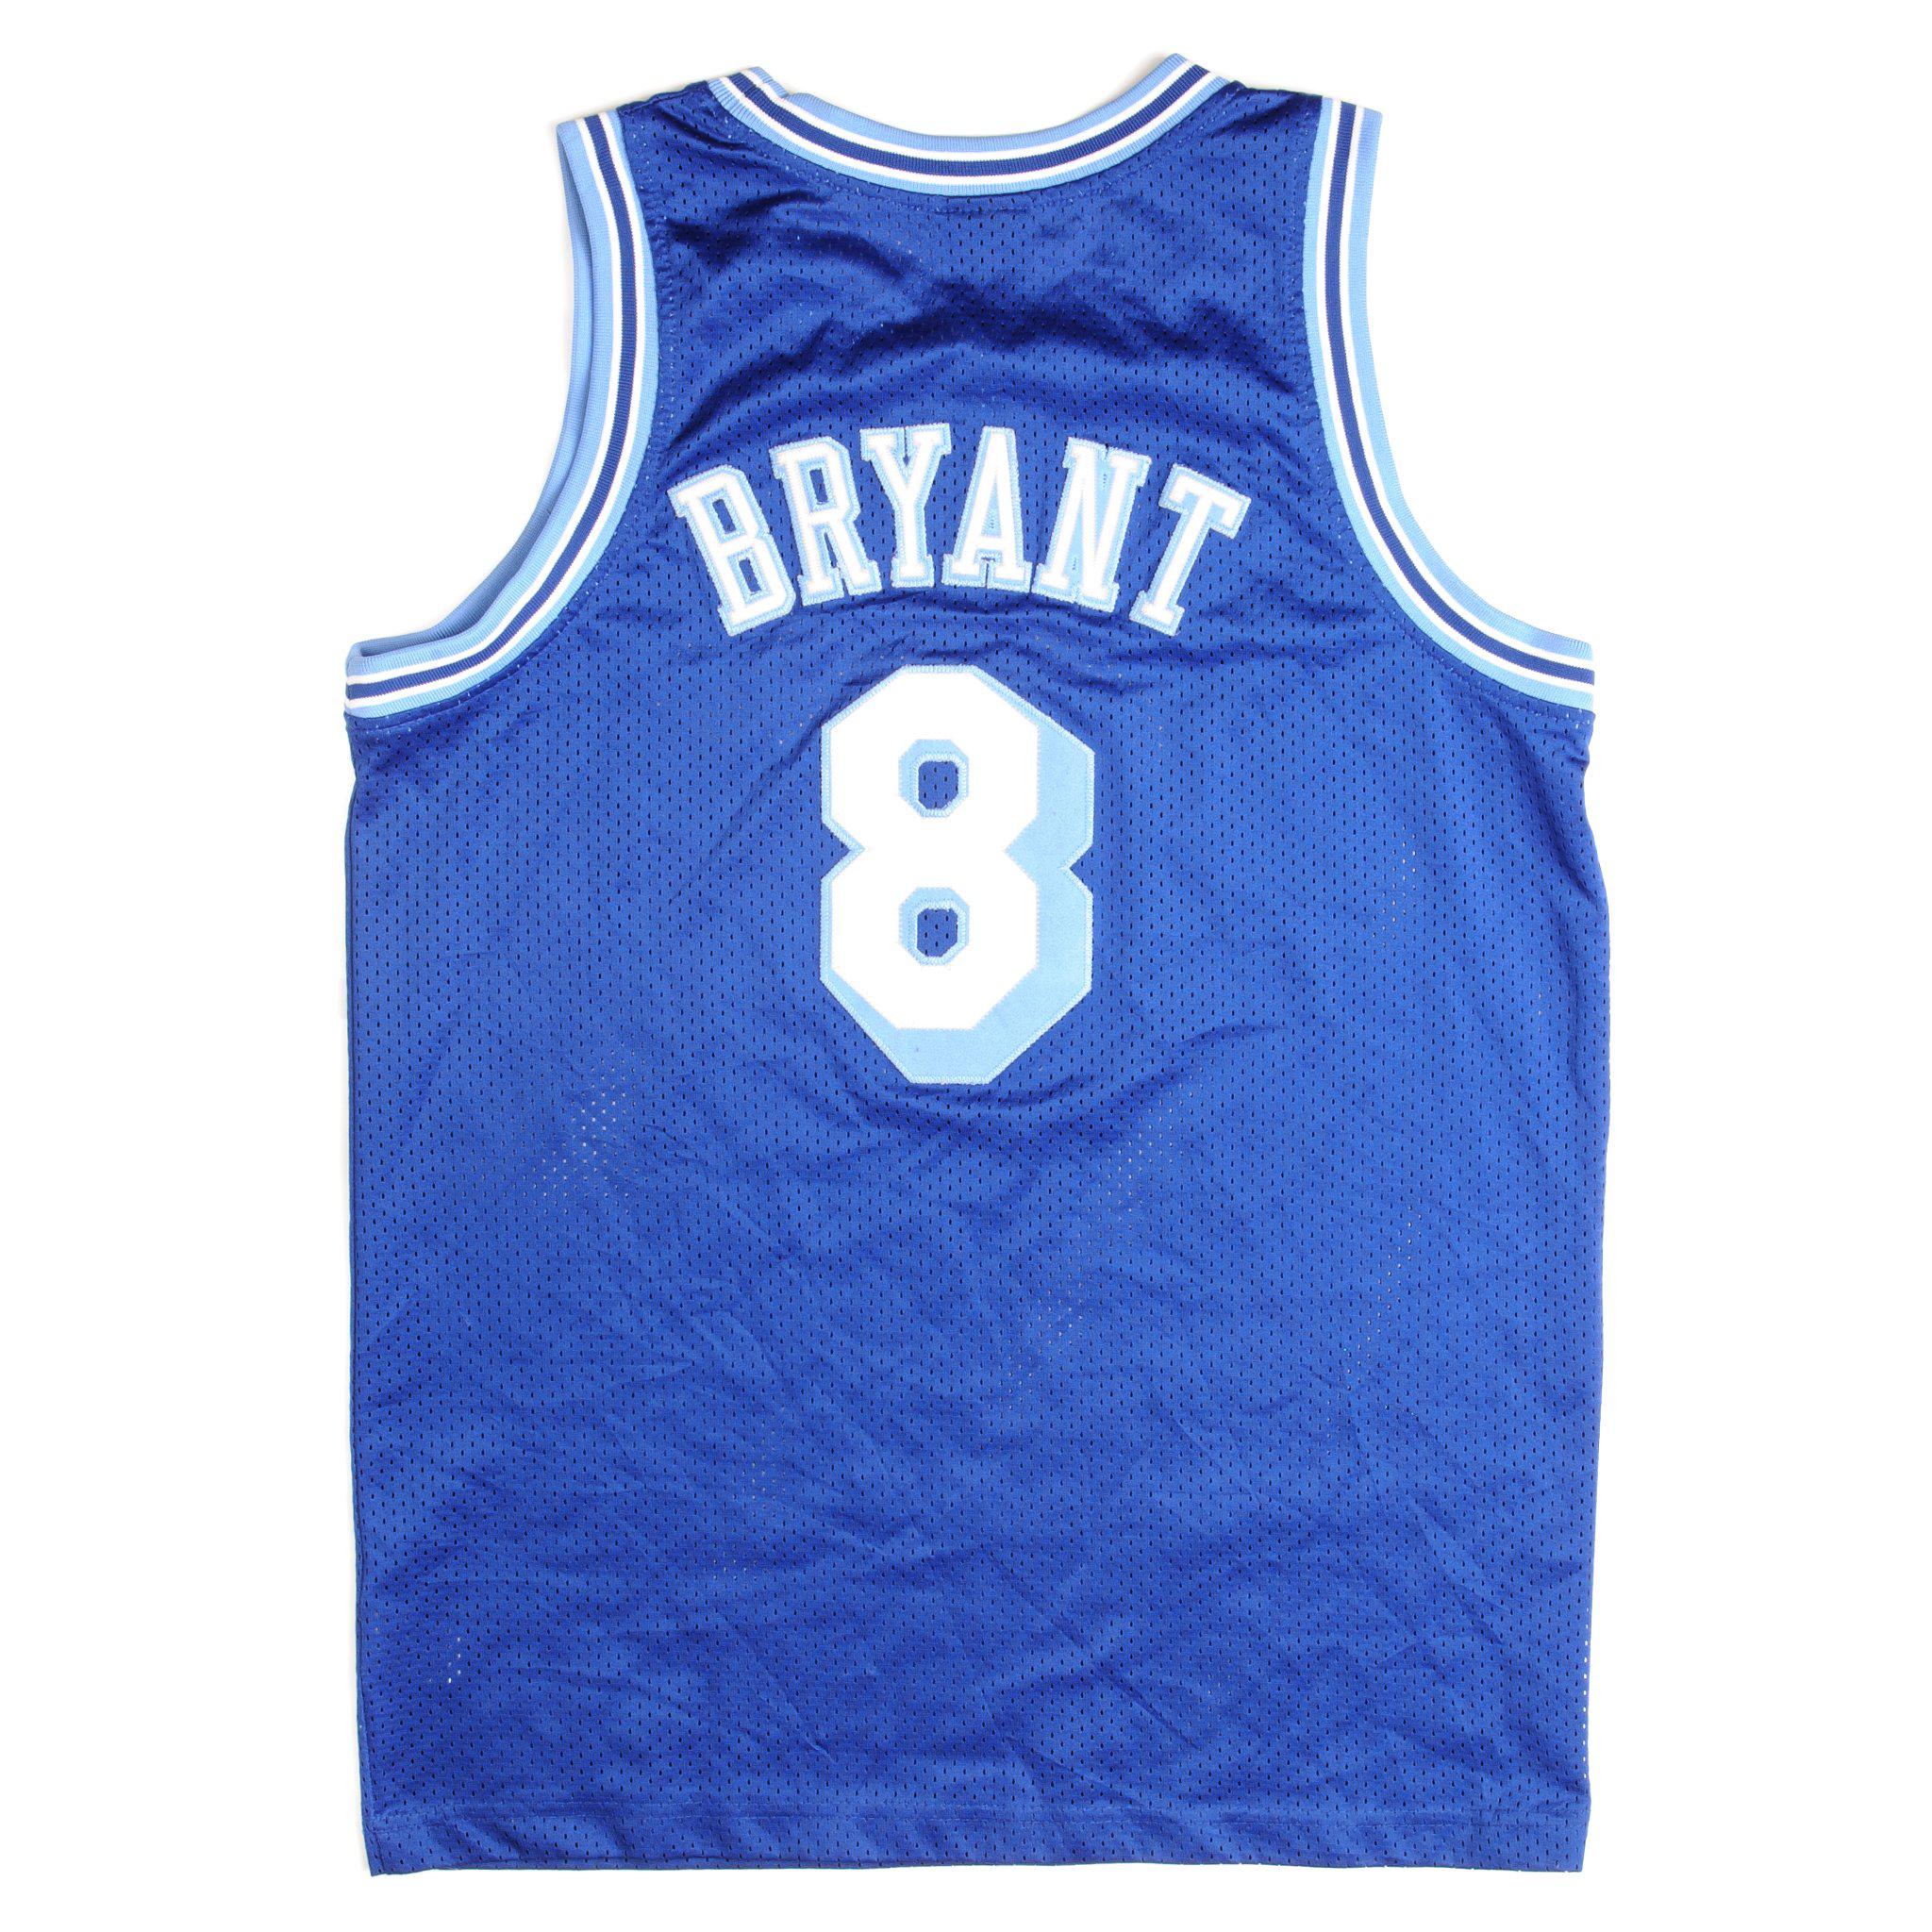 Vintage Nike Kobe Bryant Los Angeles Lakers Basketball Jersey Mens